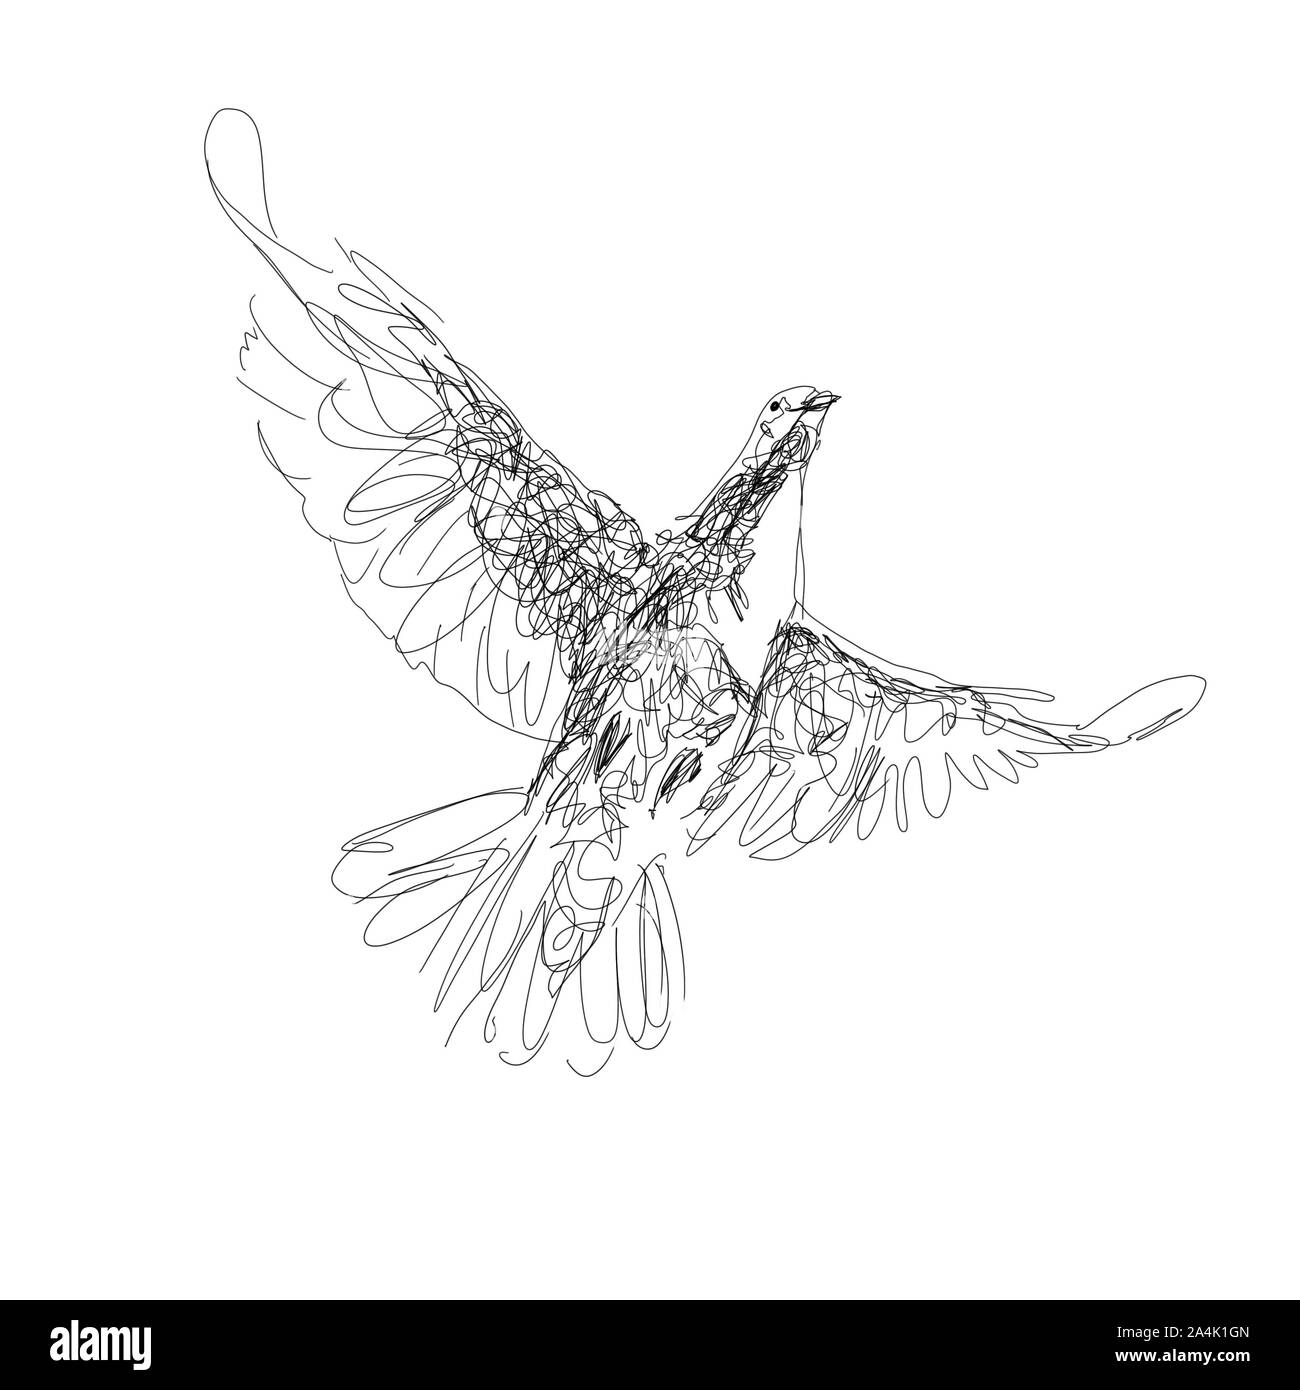 Le croquis noir numérique, illustration de pigeon, symbole de l'Esprit Saint, isolé sur fond blanc Banque D'Images